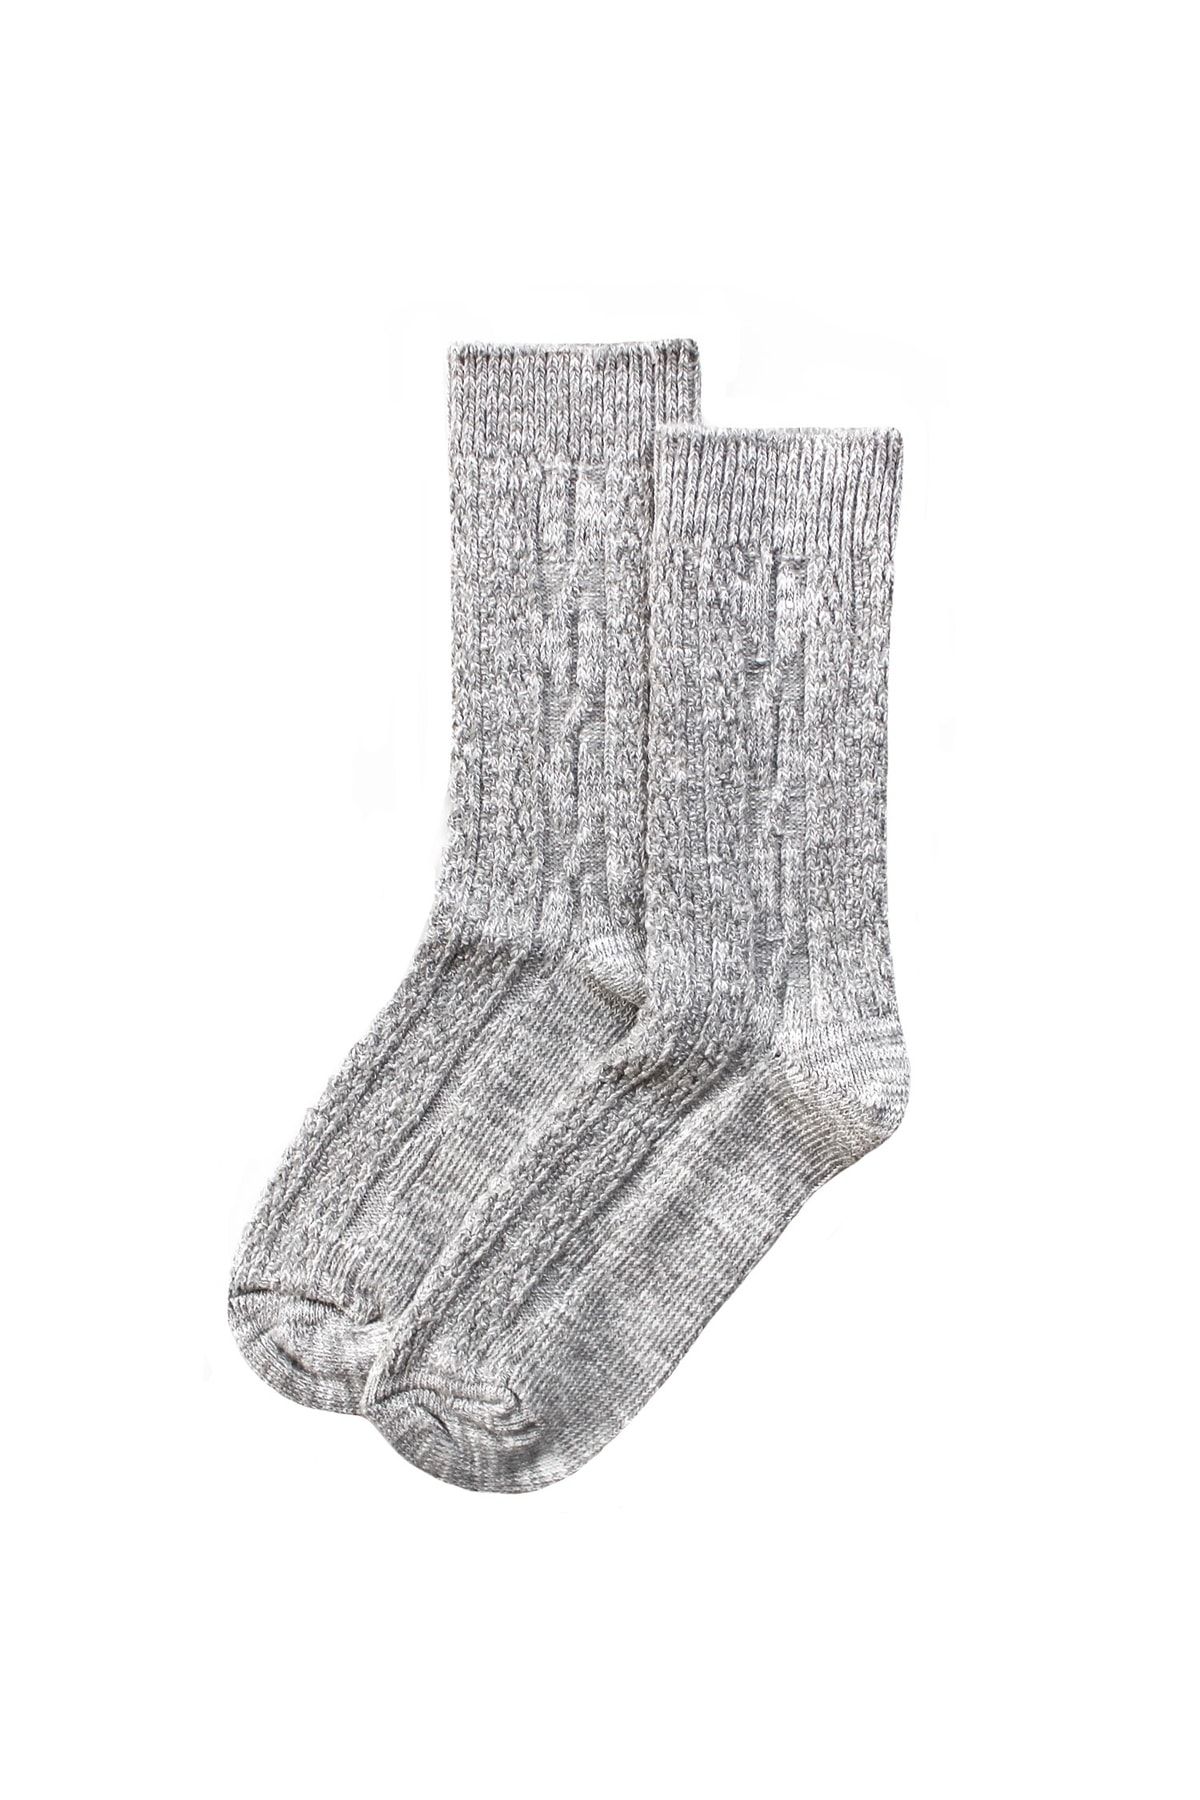 UNLIMITED LEGWEAR Kalın Kışlık Gri Örgü Desenli Viskoz Kadın Çorap